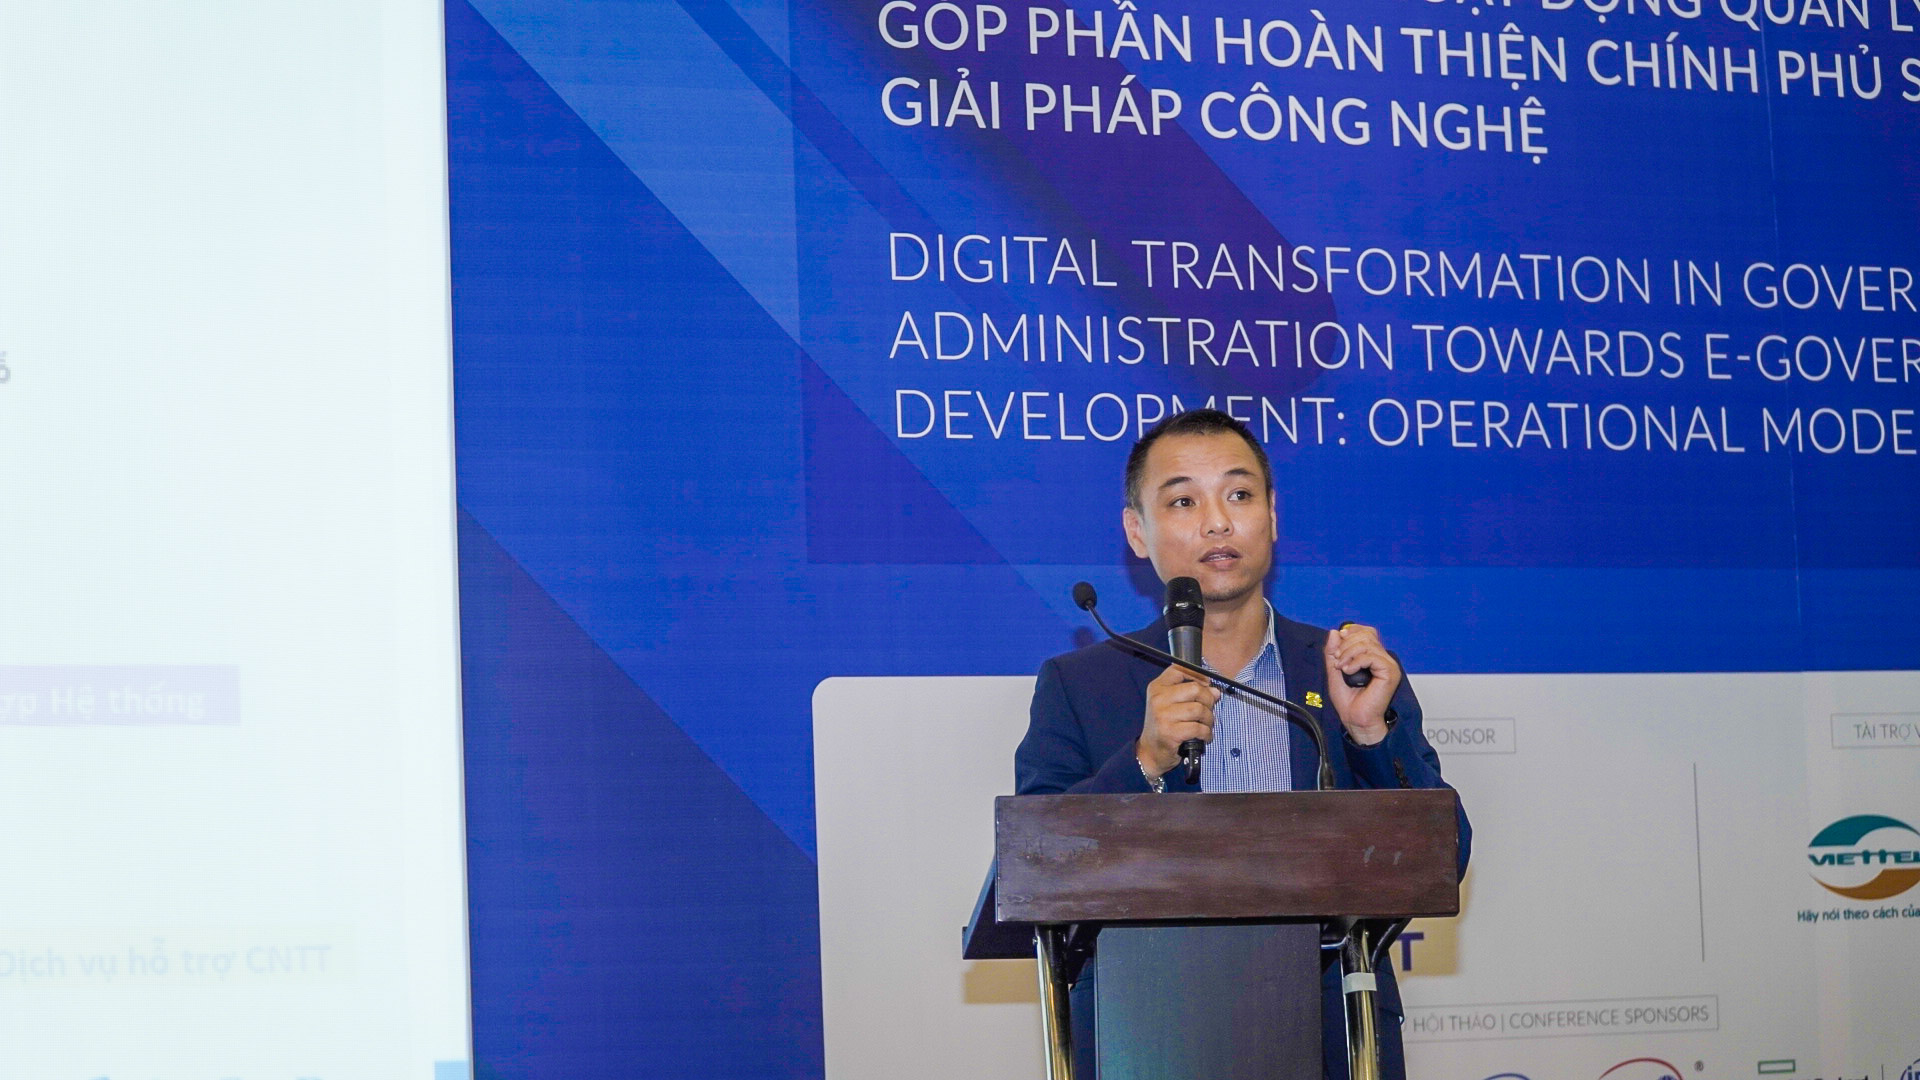 Sao Bac Dau has launched an e-Government development solution - eGOV